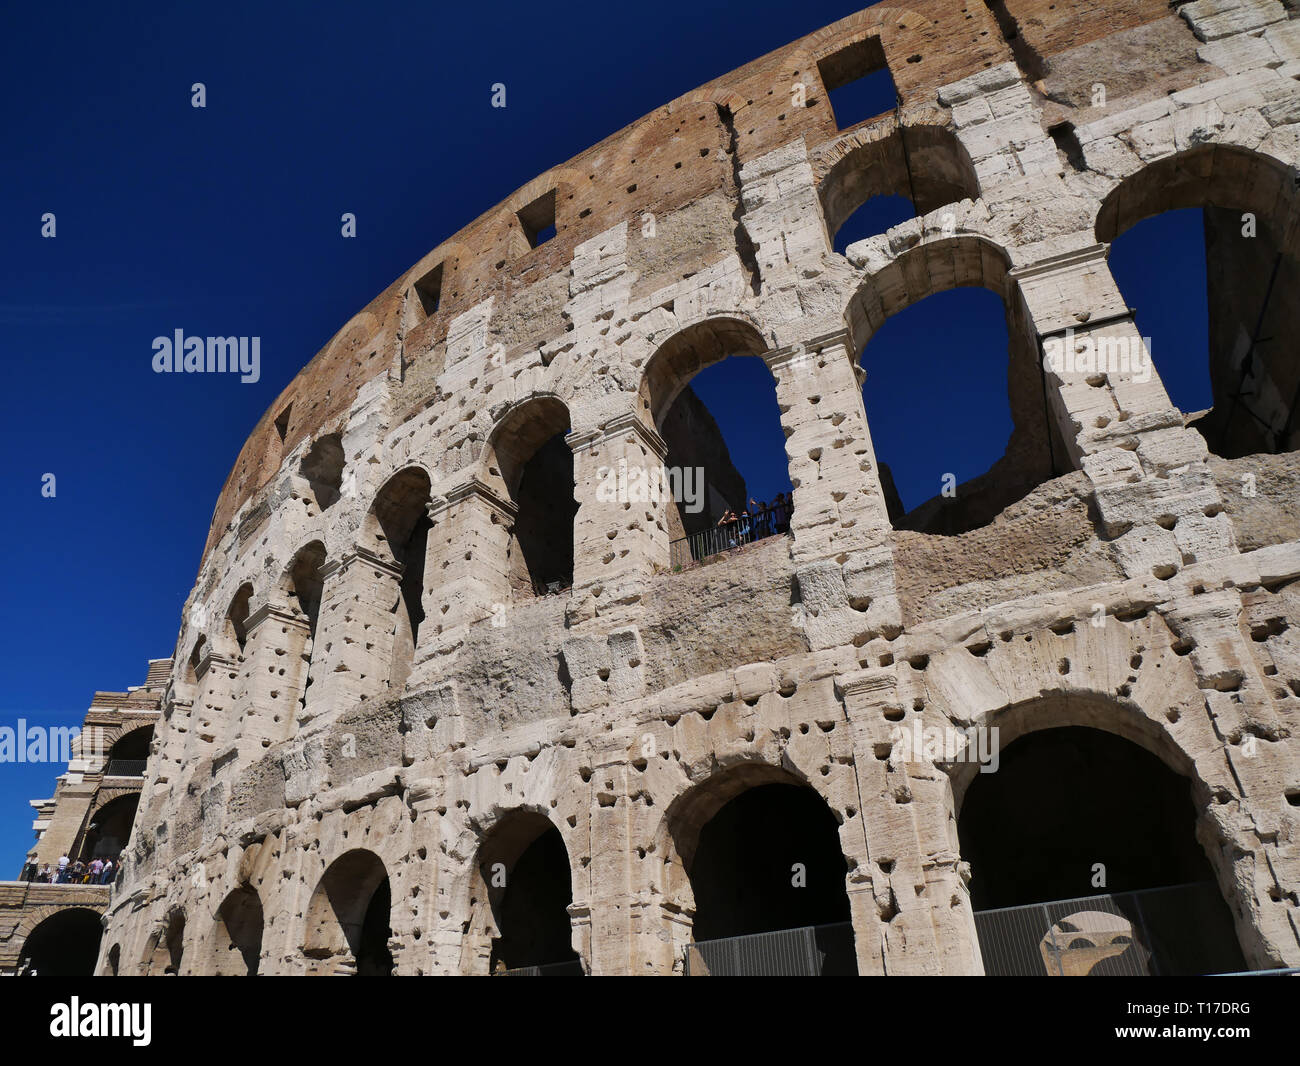 Das Kolosseum in Rom, Italien, mit Löchern in der Travertin Bausteine,  verwendet zu verankern, ein Marmorbad und strukturelle Versteifungen  Stockfotografie - Alamy